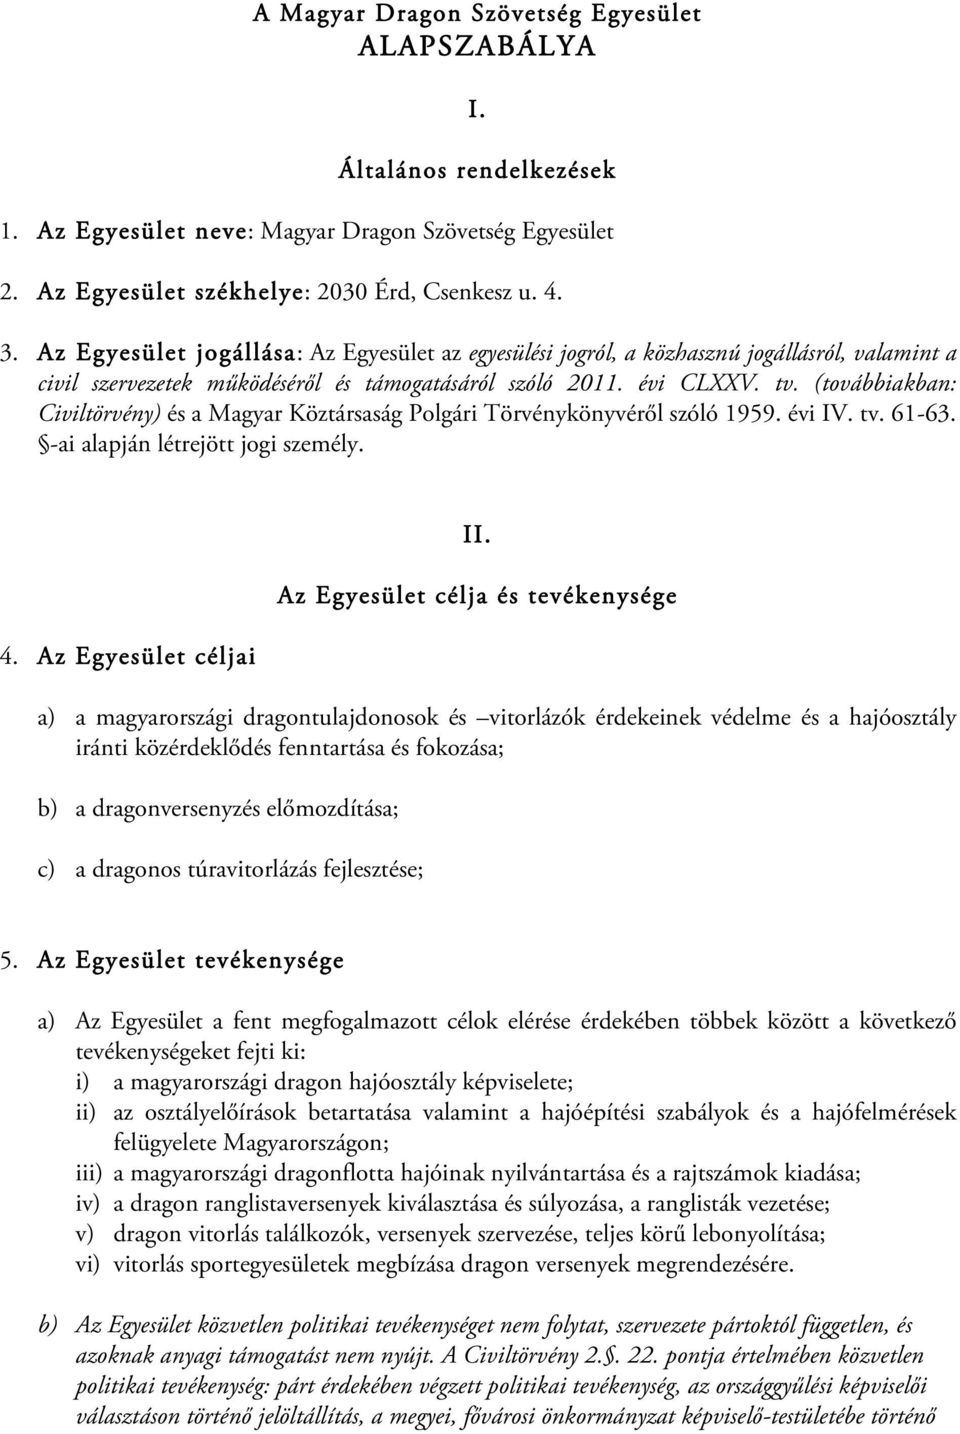 (továbbiakban: Civiltörvény) és a Magyar Köztársaság Polgári Törvénykönyvéről szóló 1959. évi IV. tv. 61-63. -ai alapján létrejött jogi személy. 4. Az Egyesület céljai II.